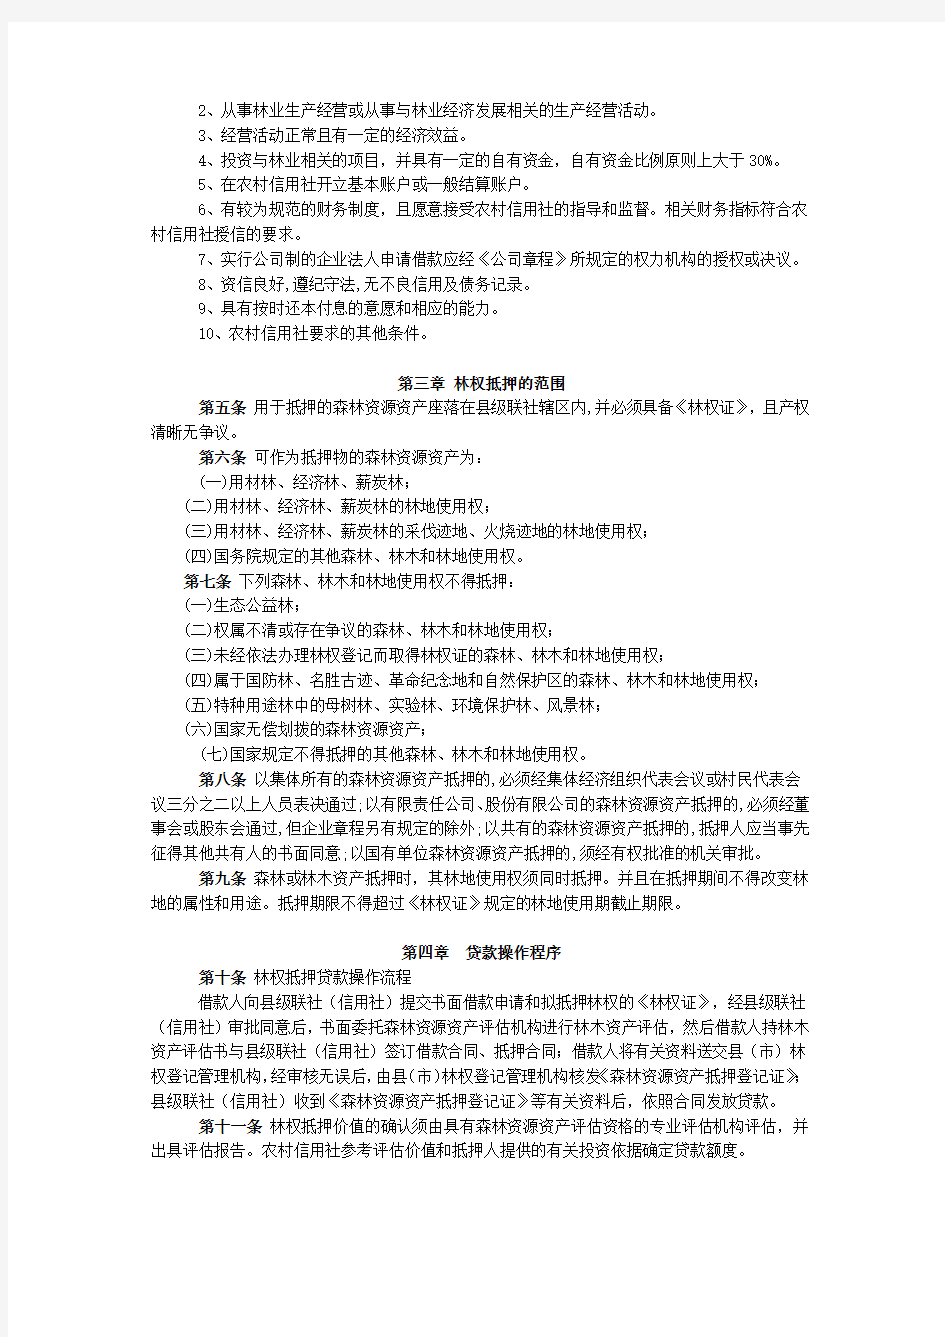 河北省农村信用社林权抵押贷款管理办法(试行)